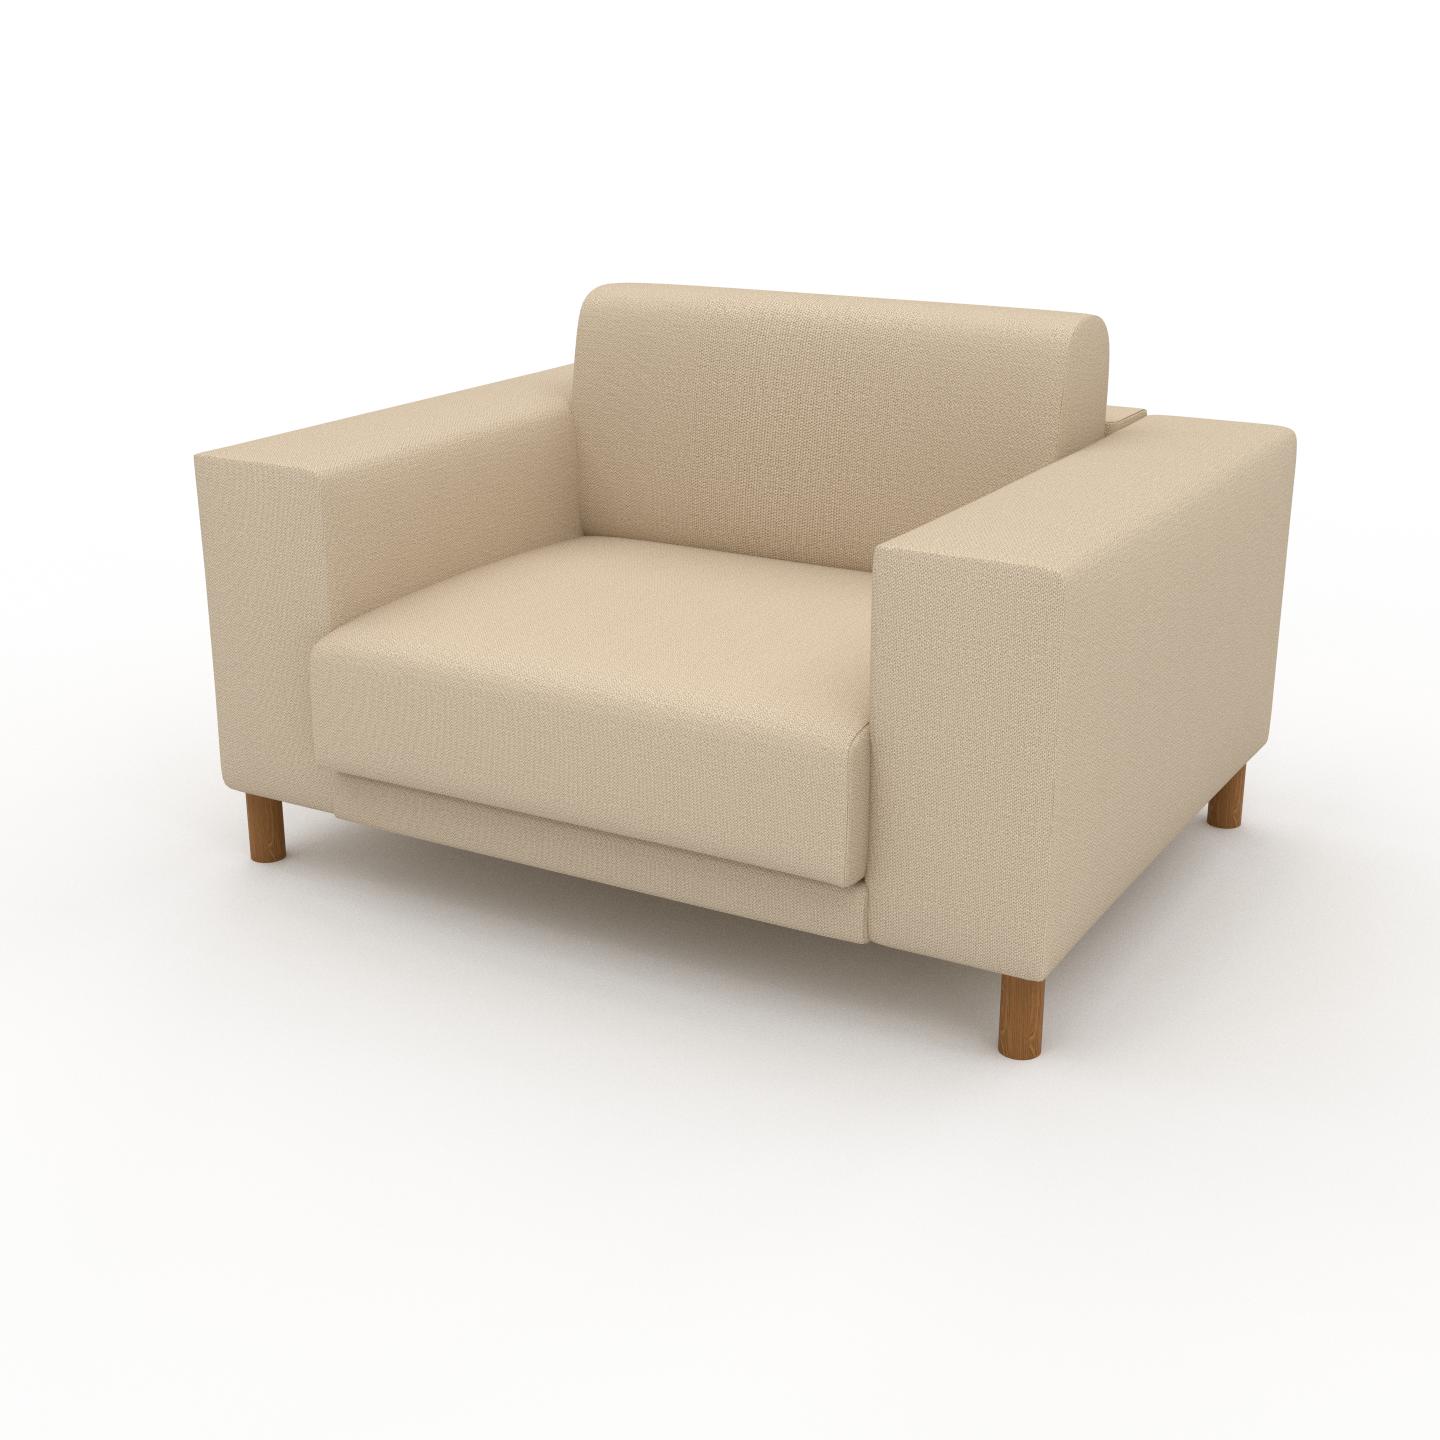 MYCS Sessel Cremebeige - Eleganter Sessel: Hochwertige Qualität, einzigartiges Design - 128 x 75 x 98 cm, Individuell konfigurierbar